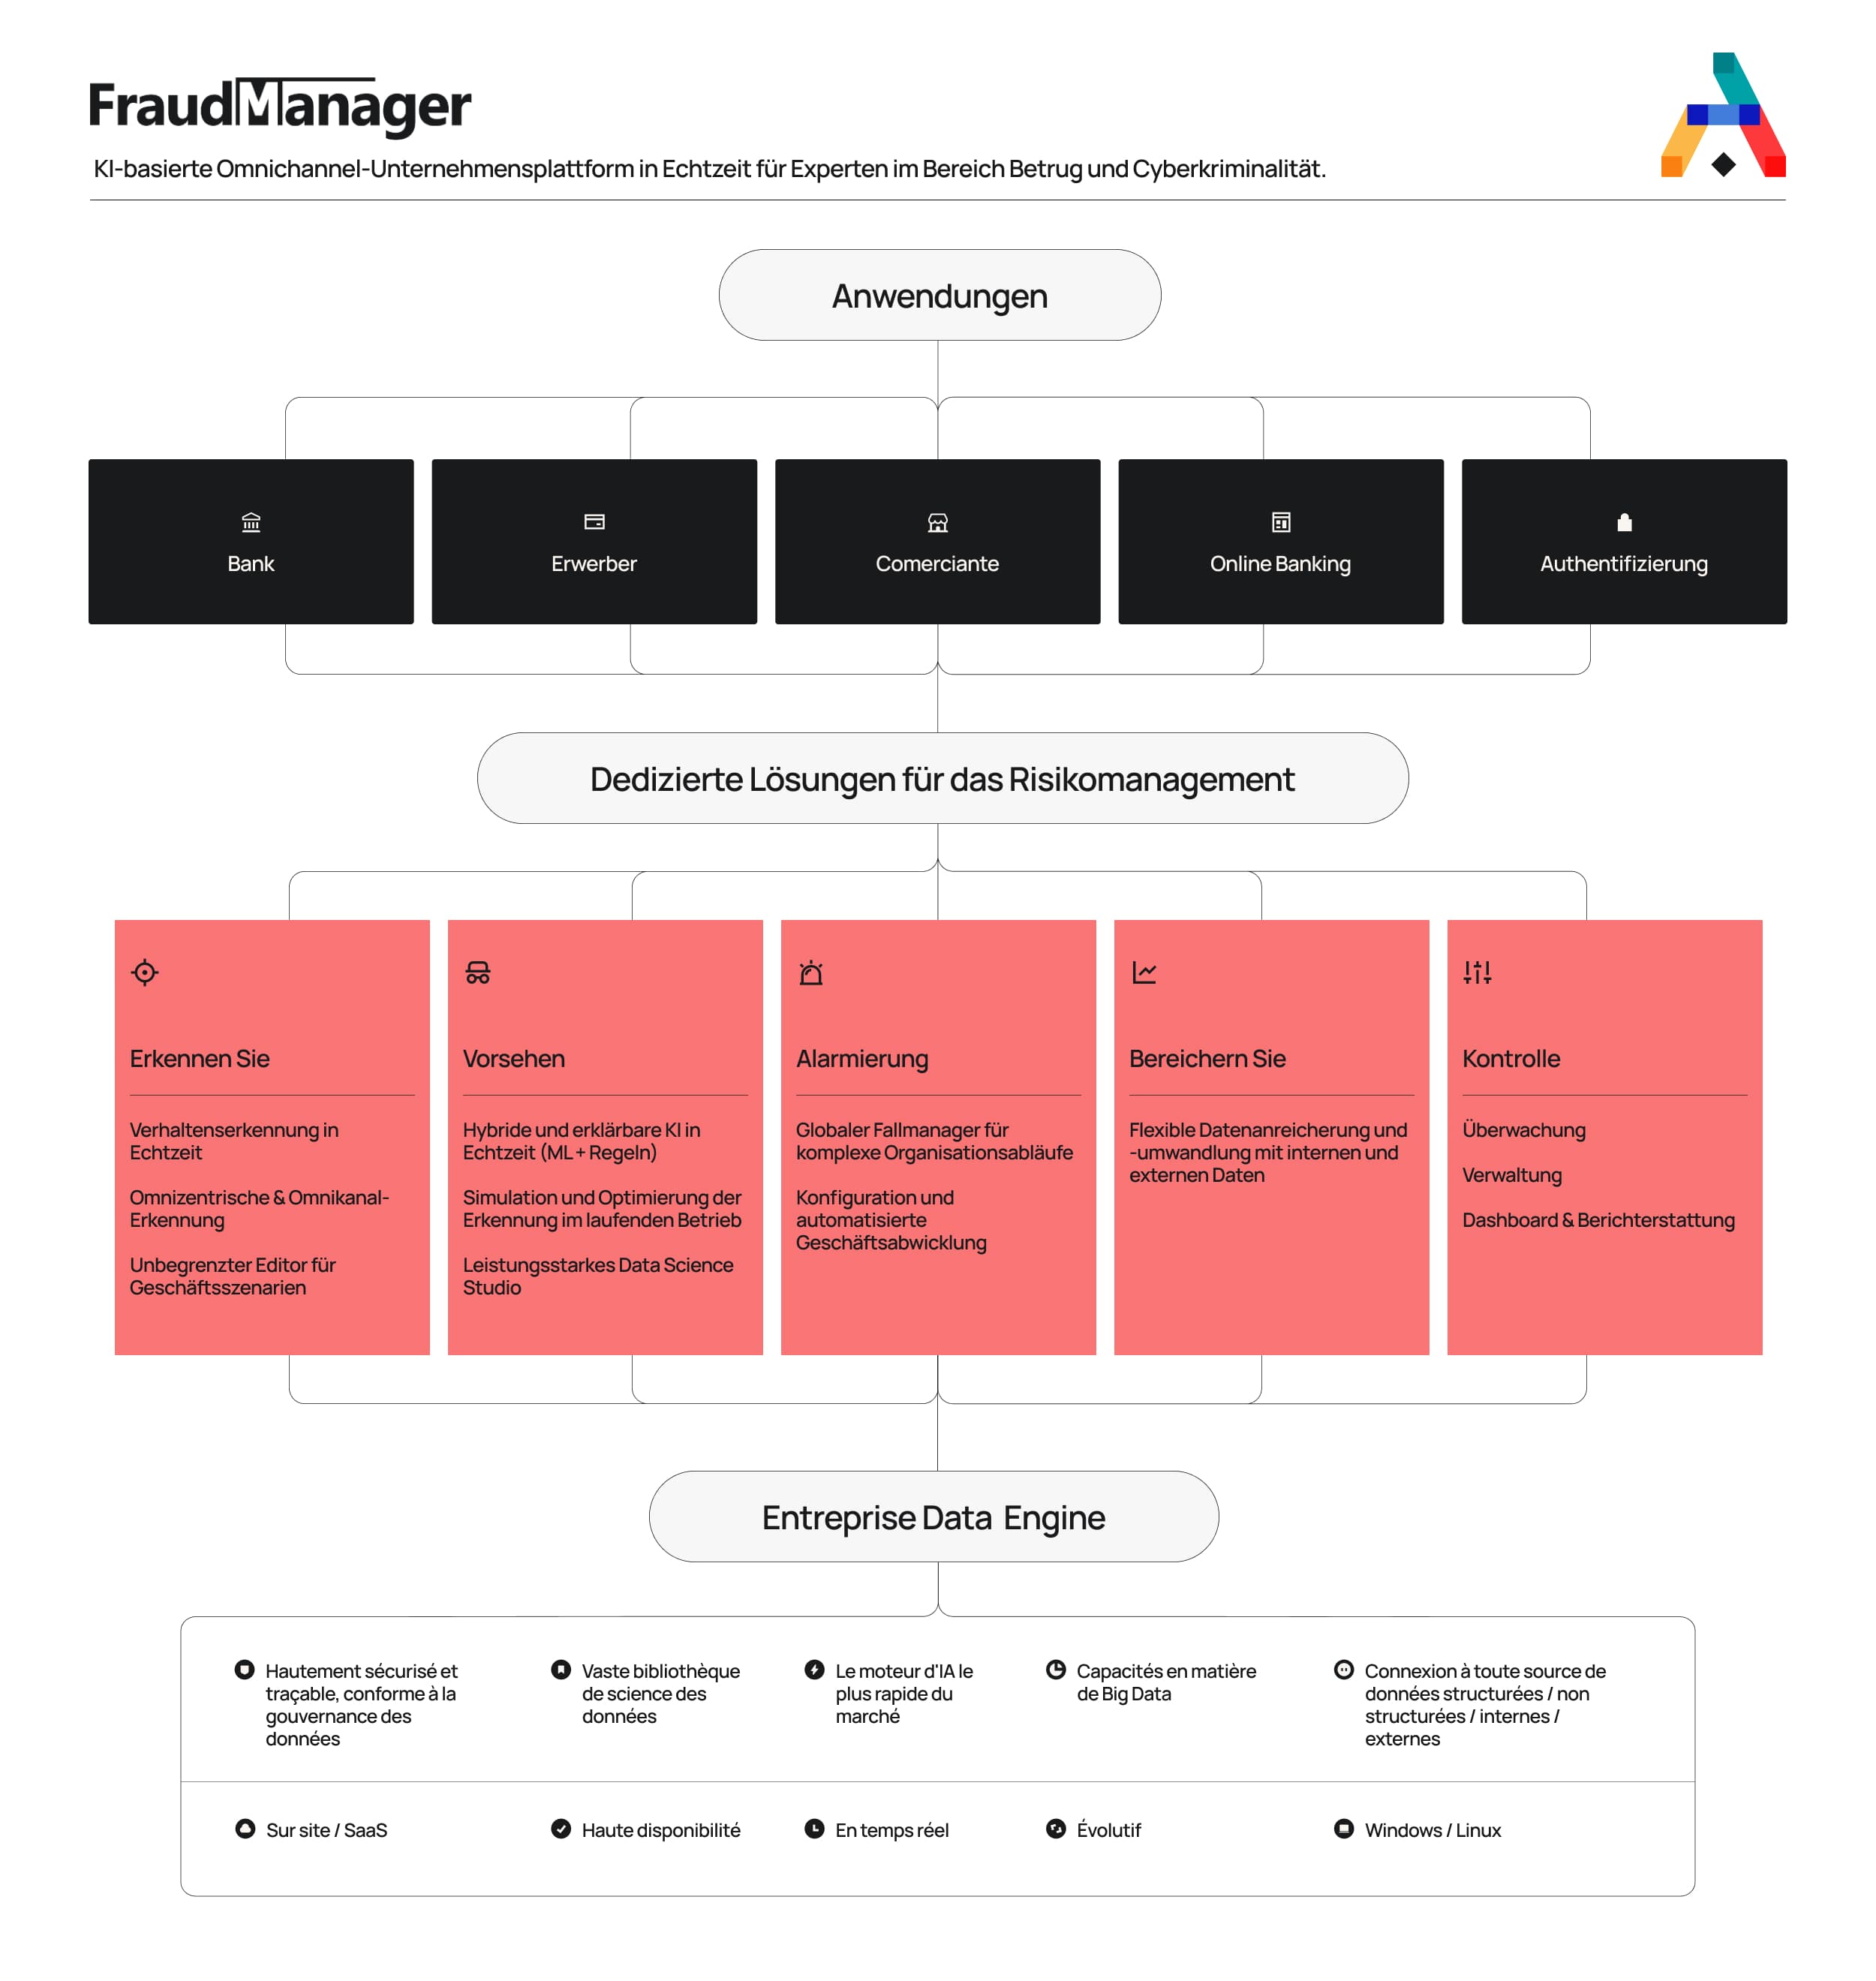 fraud_manager_de